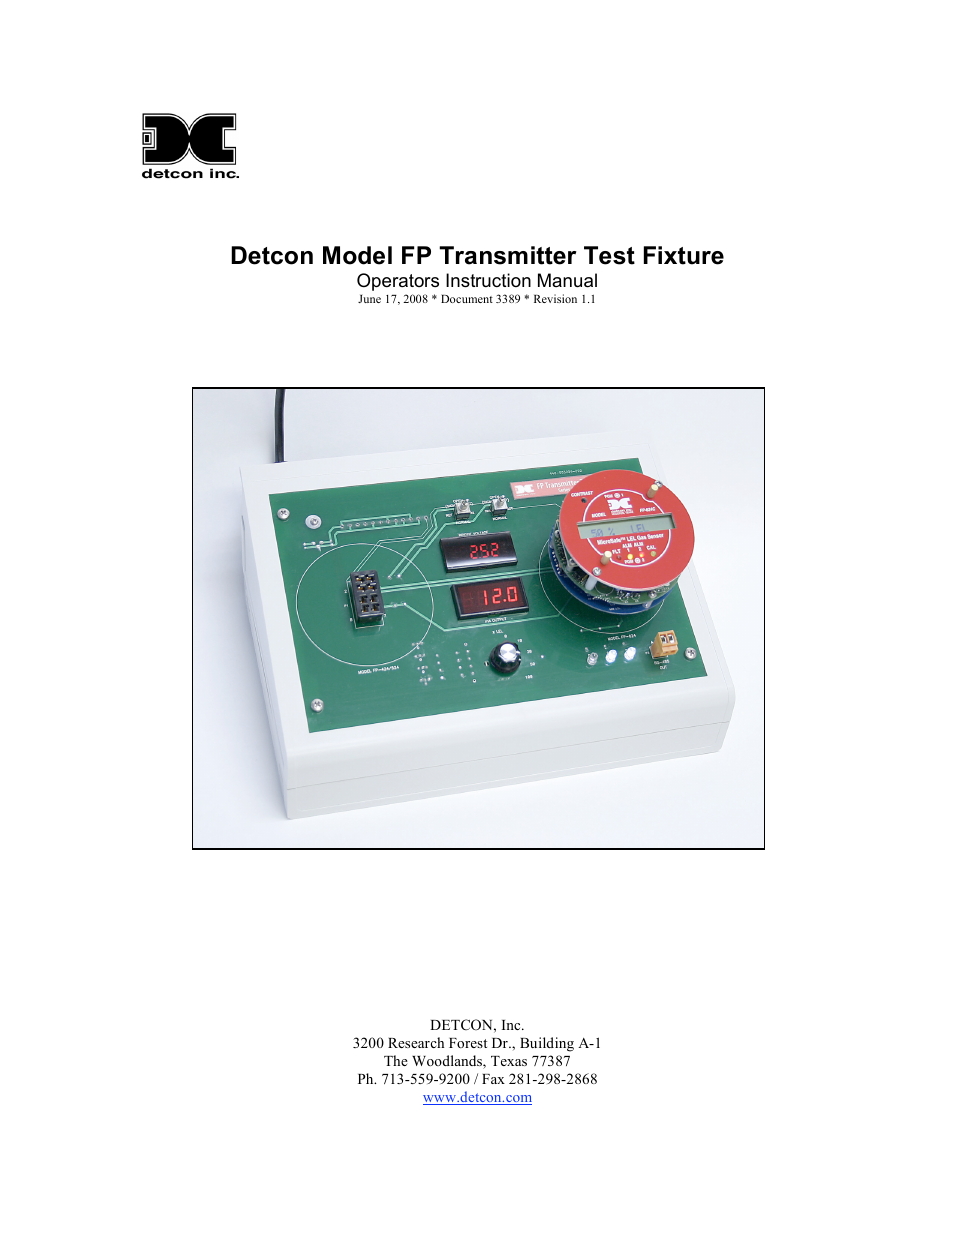 FP Transmitter Test Fixture